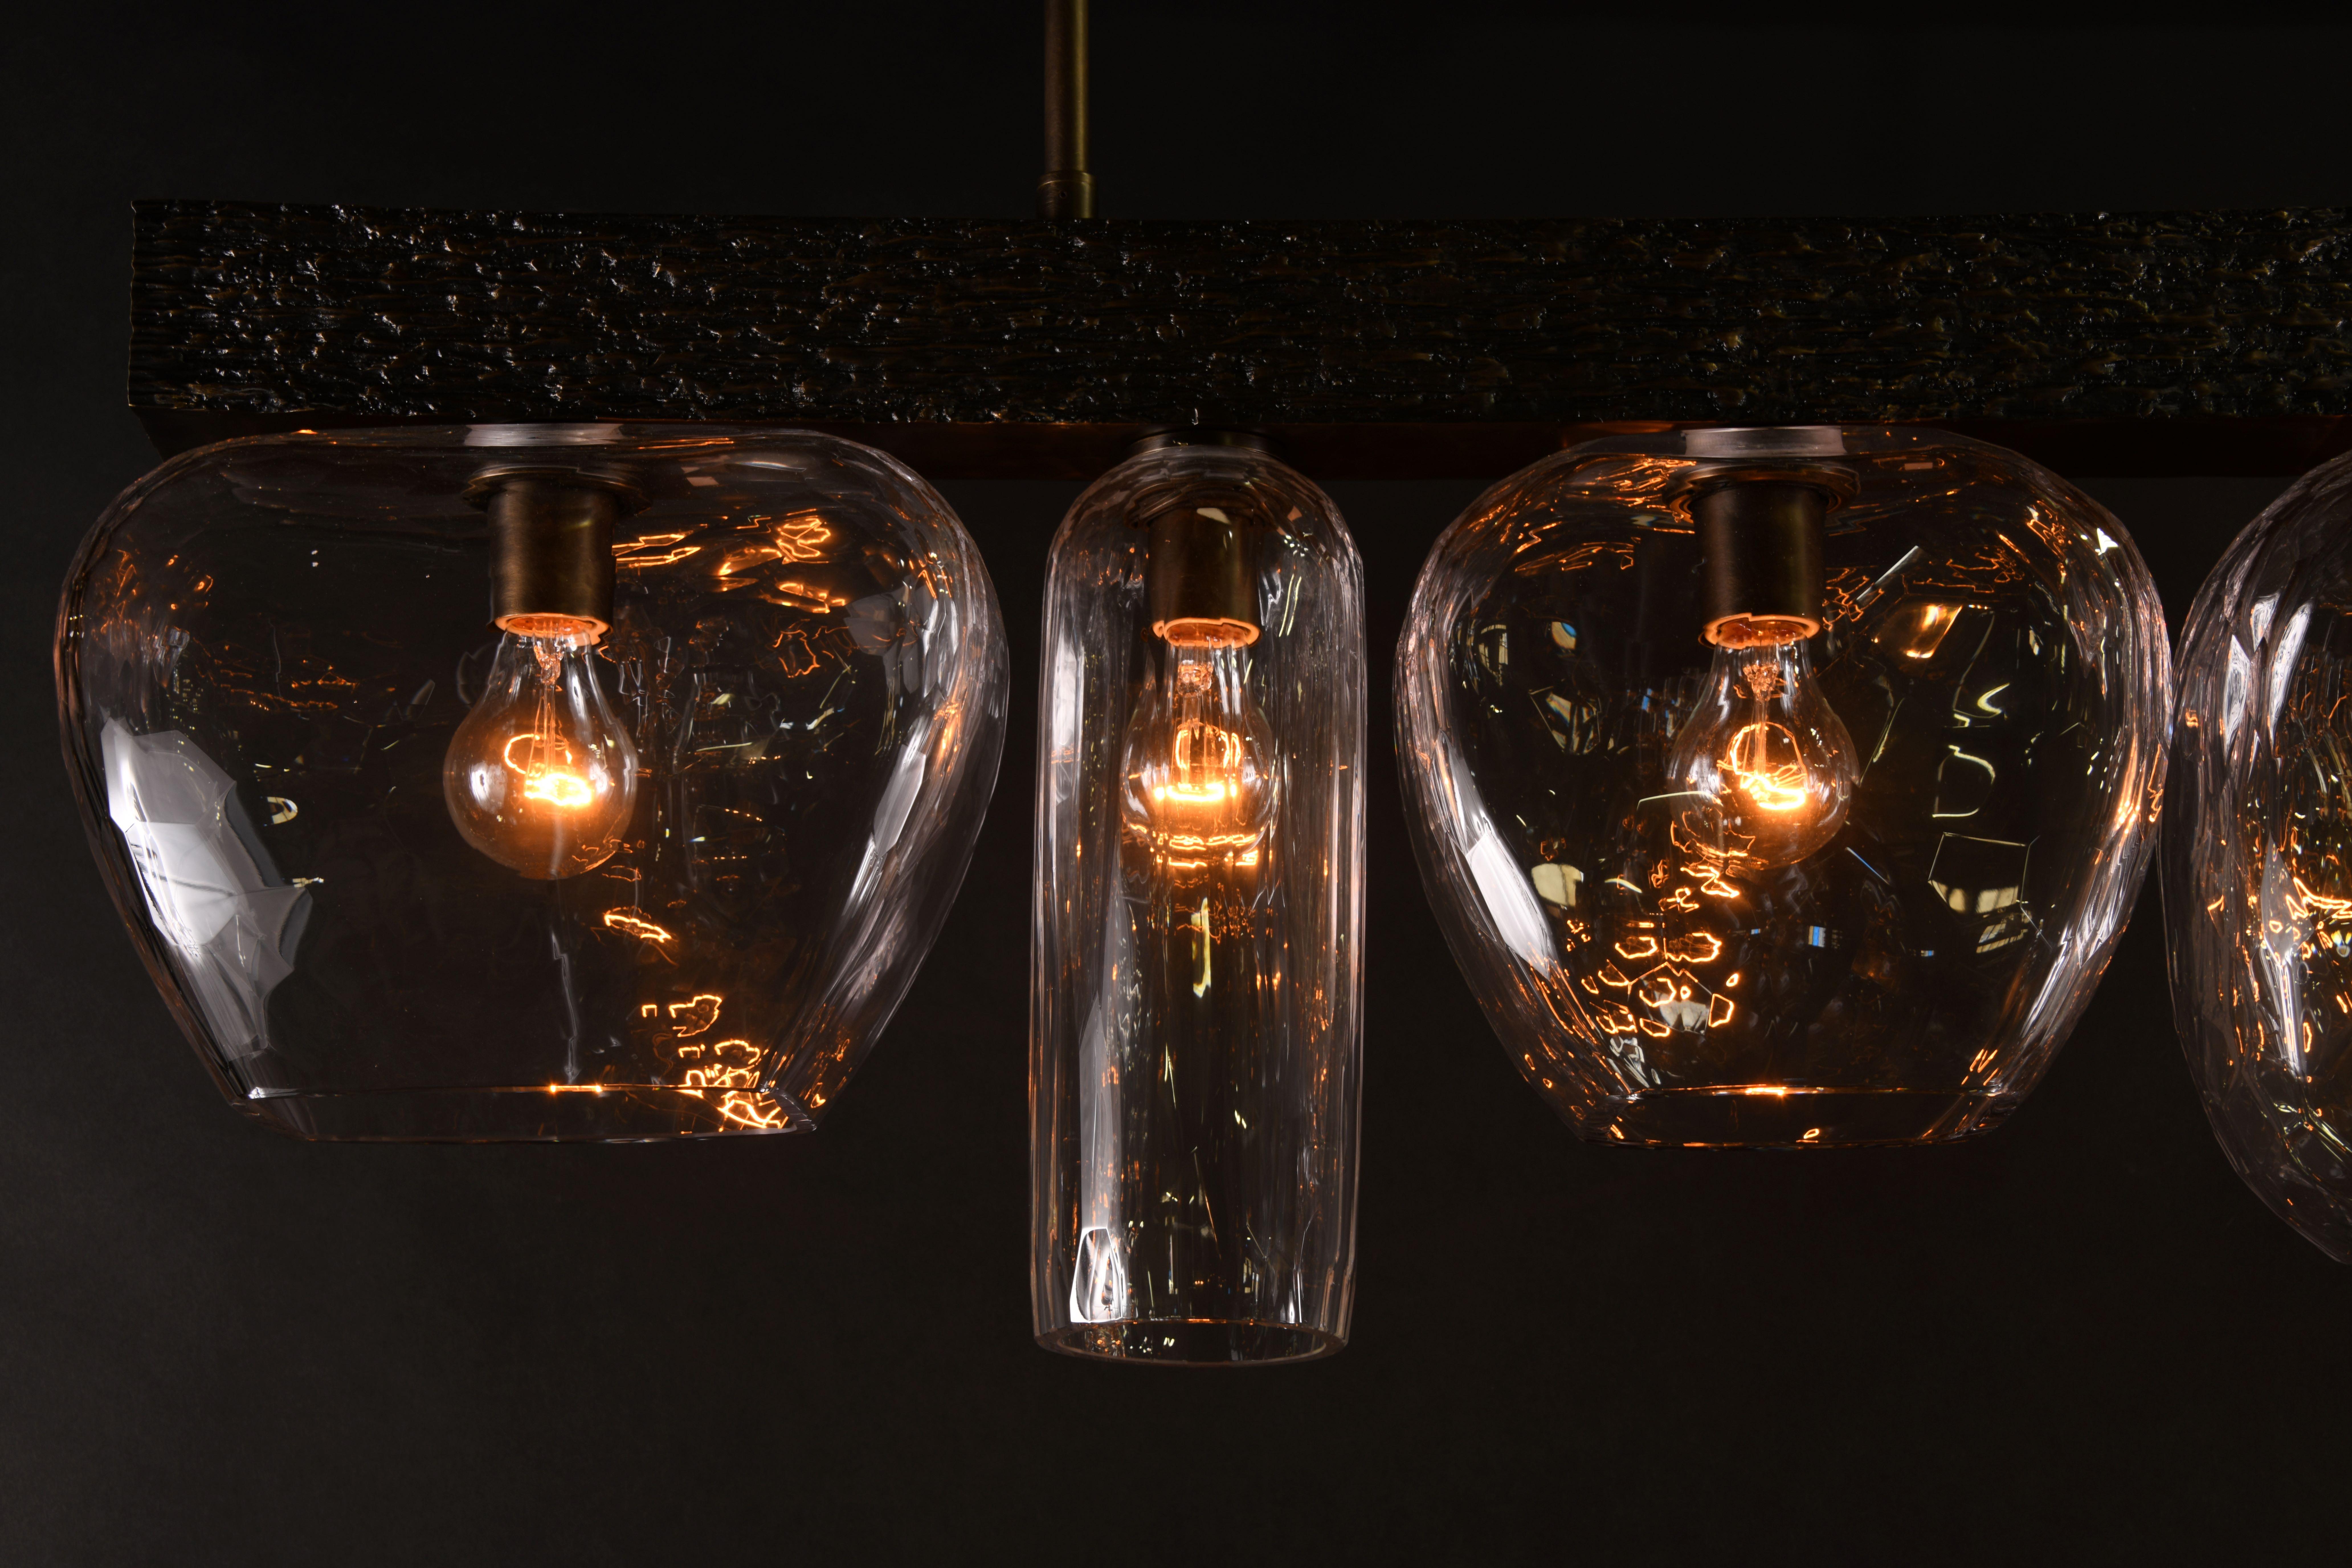 Ensemble de lanternes en verre strié, fortement galetées, suspendues à des cadres en bronze massif avec des détails bruts de fonderie.

Les modèles de la collection sont fabriqués individuellement à la main par les artisans qualifiés de notre